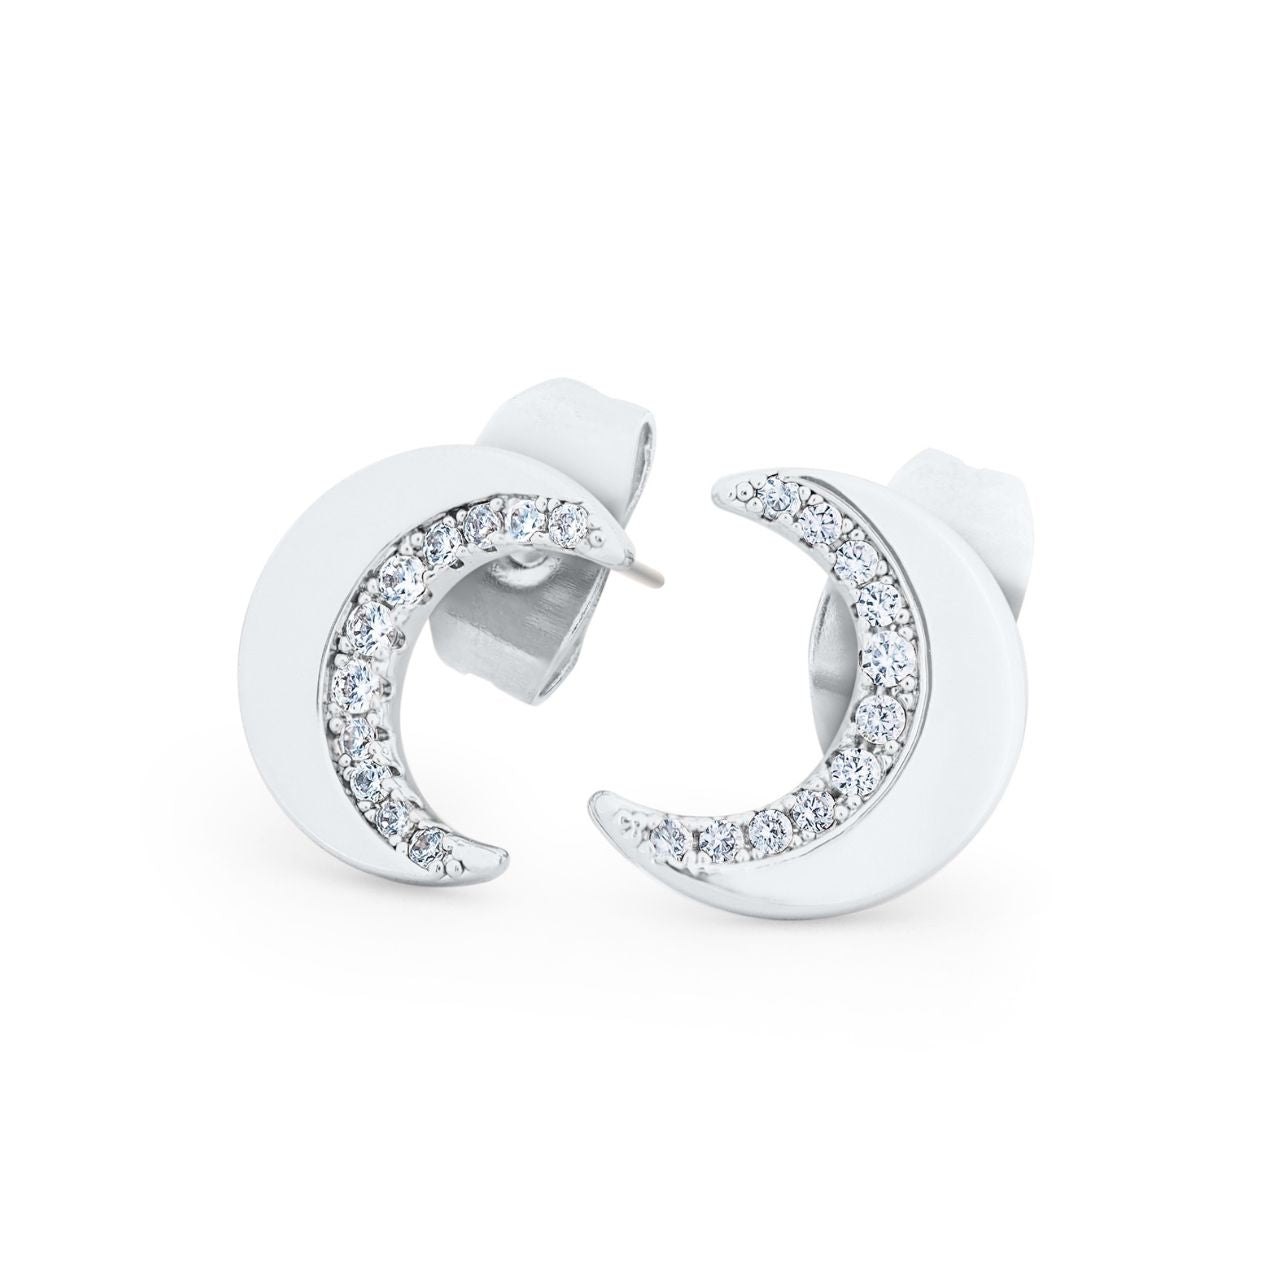 Sterling Silver Half Moon Stud Earrings by Tipperary Crystal